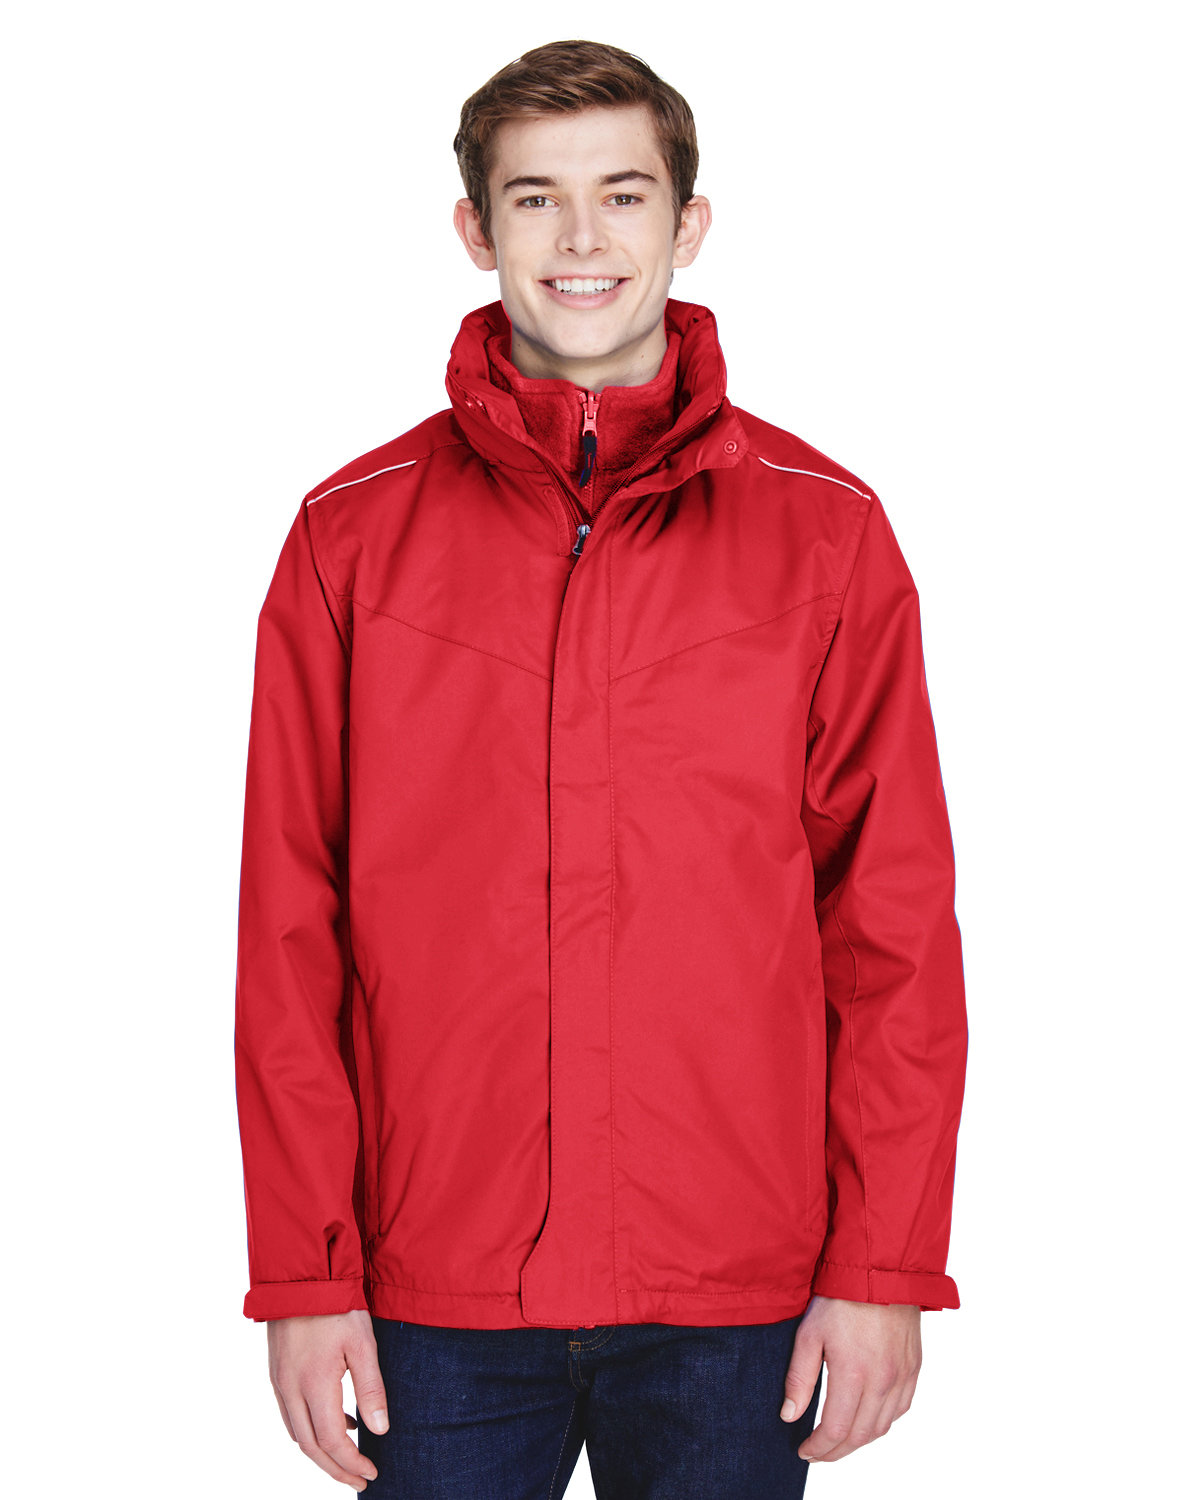 Core 365 88205 - Men's Region 3-in-1 Jacket with Fleece Liner